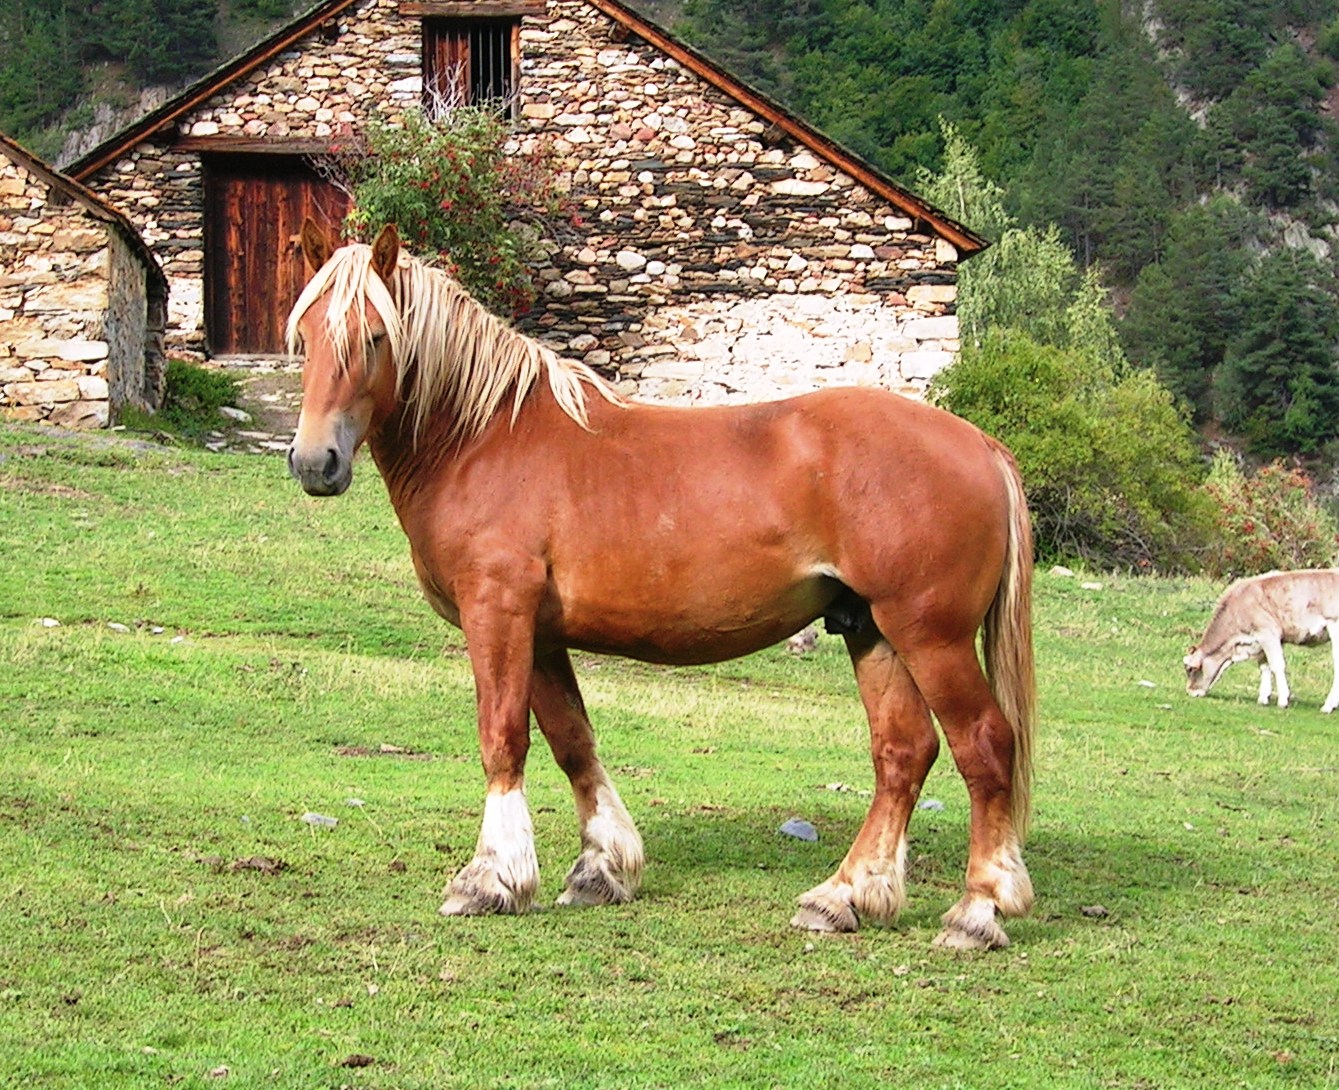 Imagen de Cavall Pirinenc Catalá (macho), autor: Jordi Jordana. Imagen facilitada por FEAGAS.